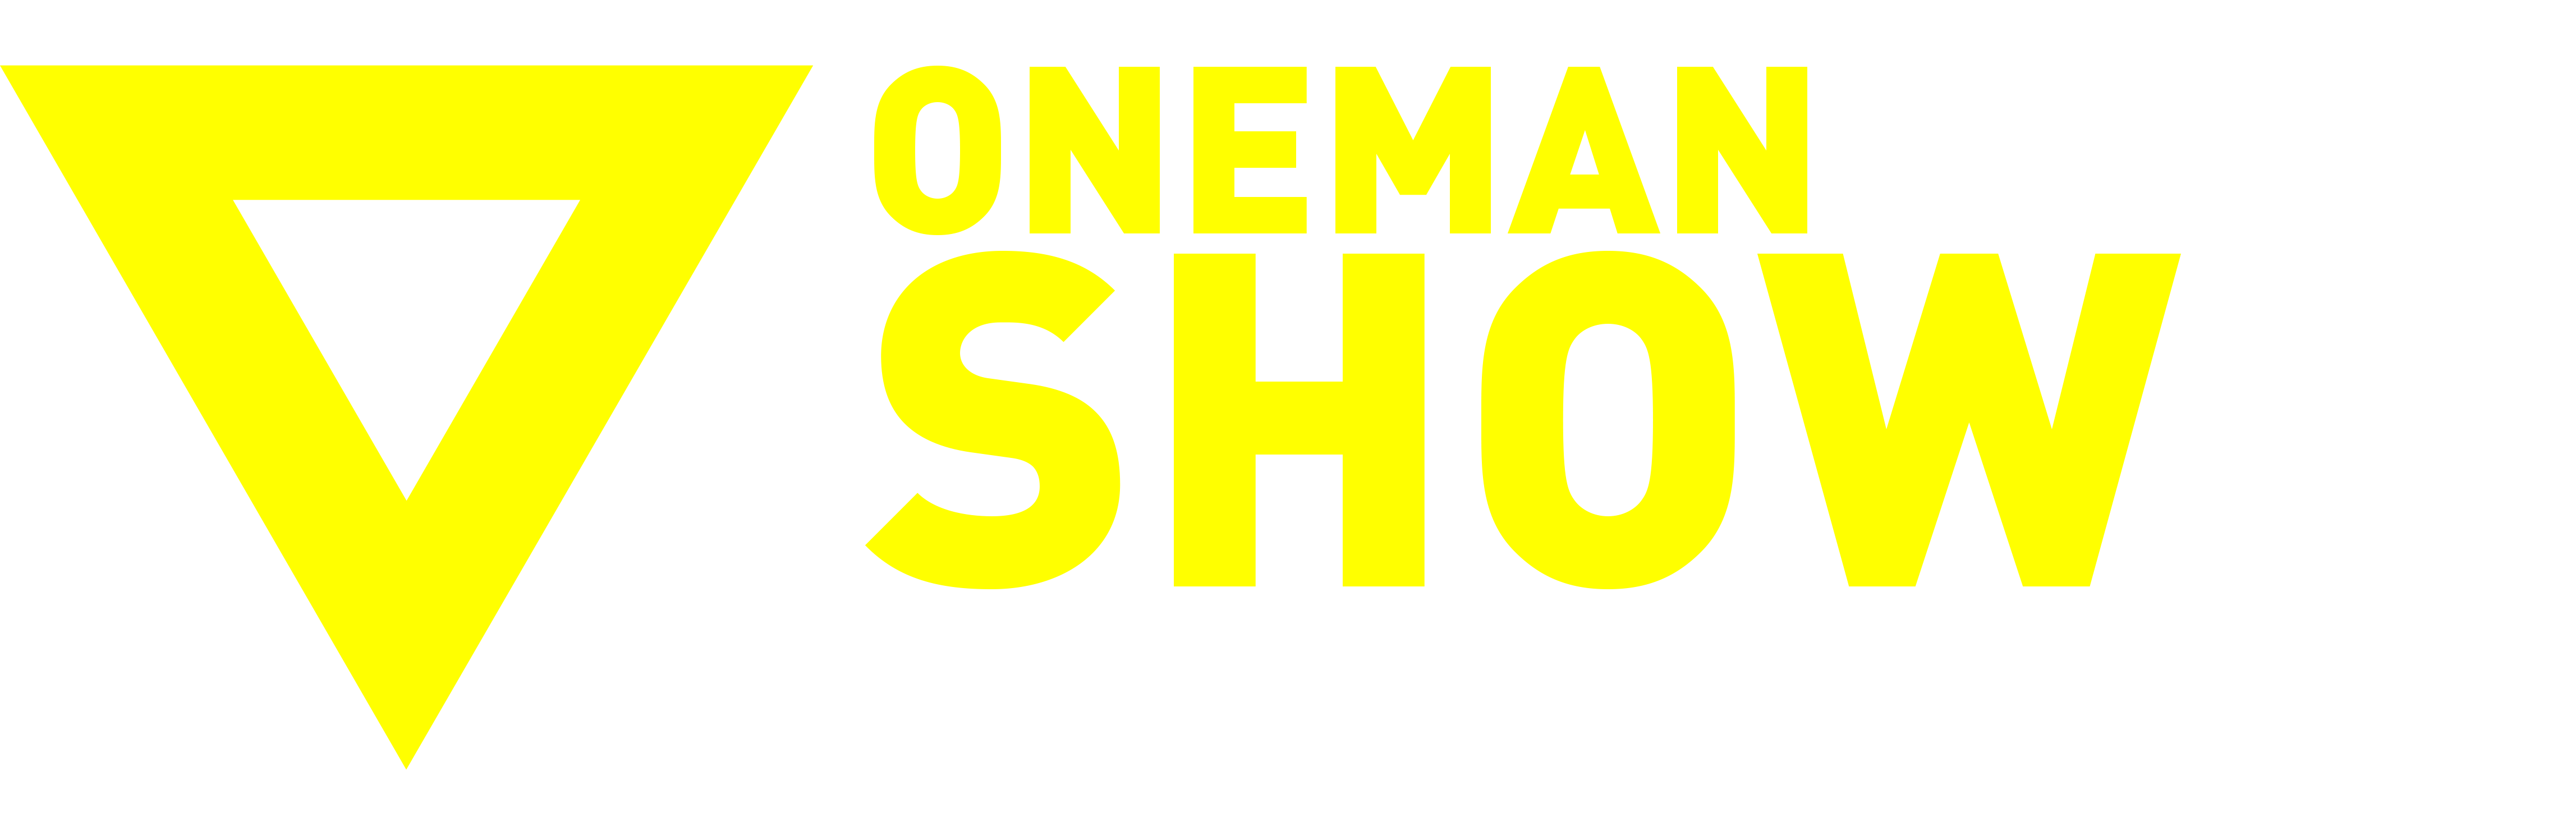 ONEMANSHOW JUSTIN BIEBER (2017)